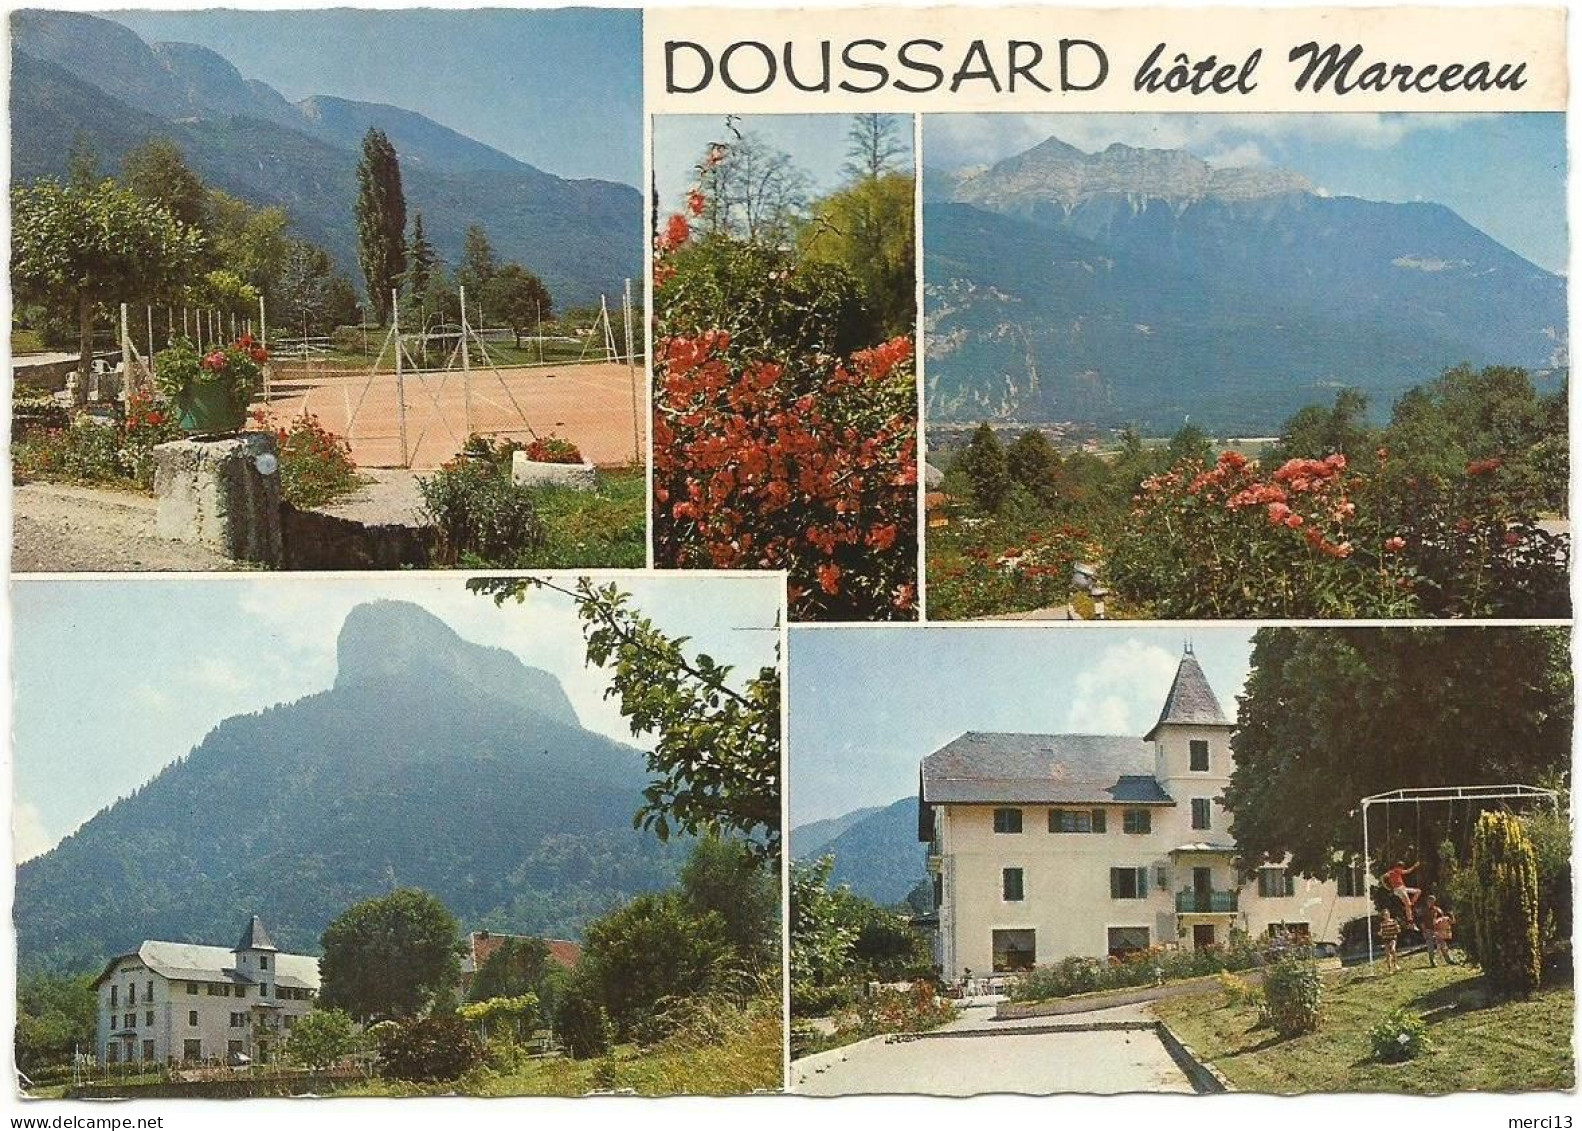 CPSM Grand Format De DOUSSARD (74) – Hôtel Marceau, Multivues. Editions Cellard, N° E 61962. - Doussard